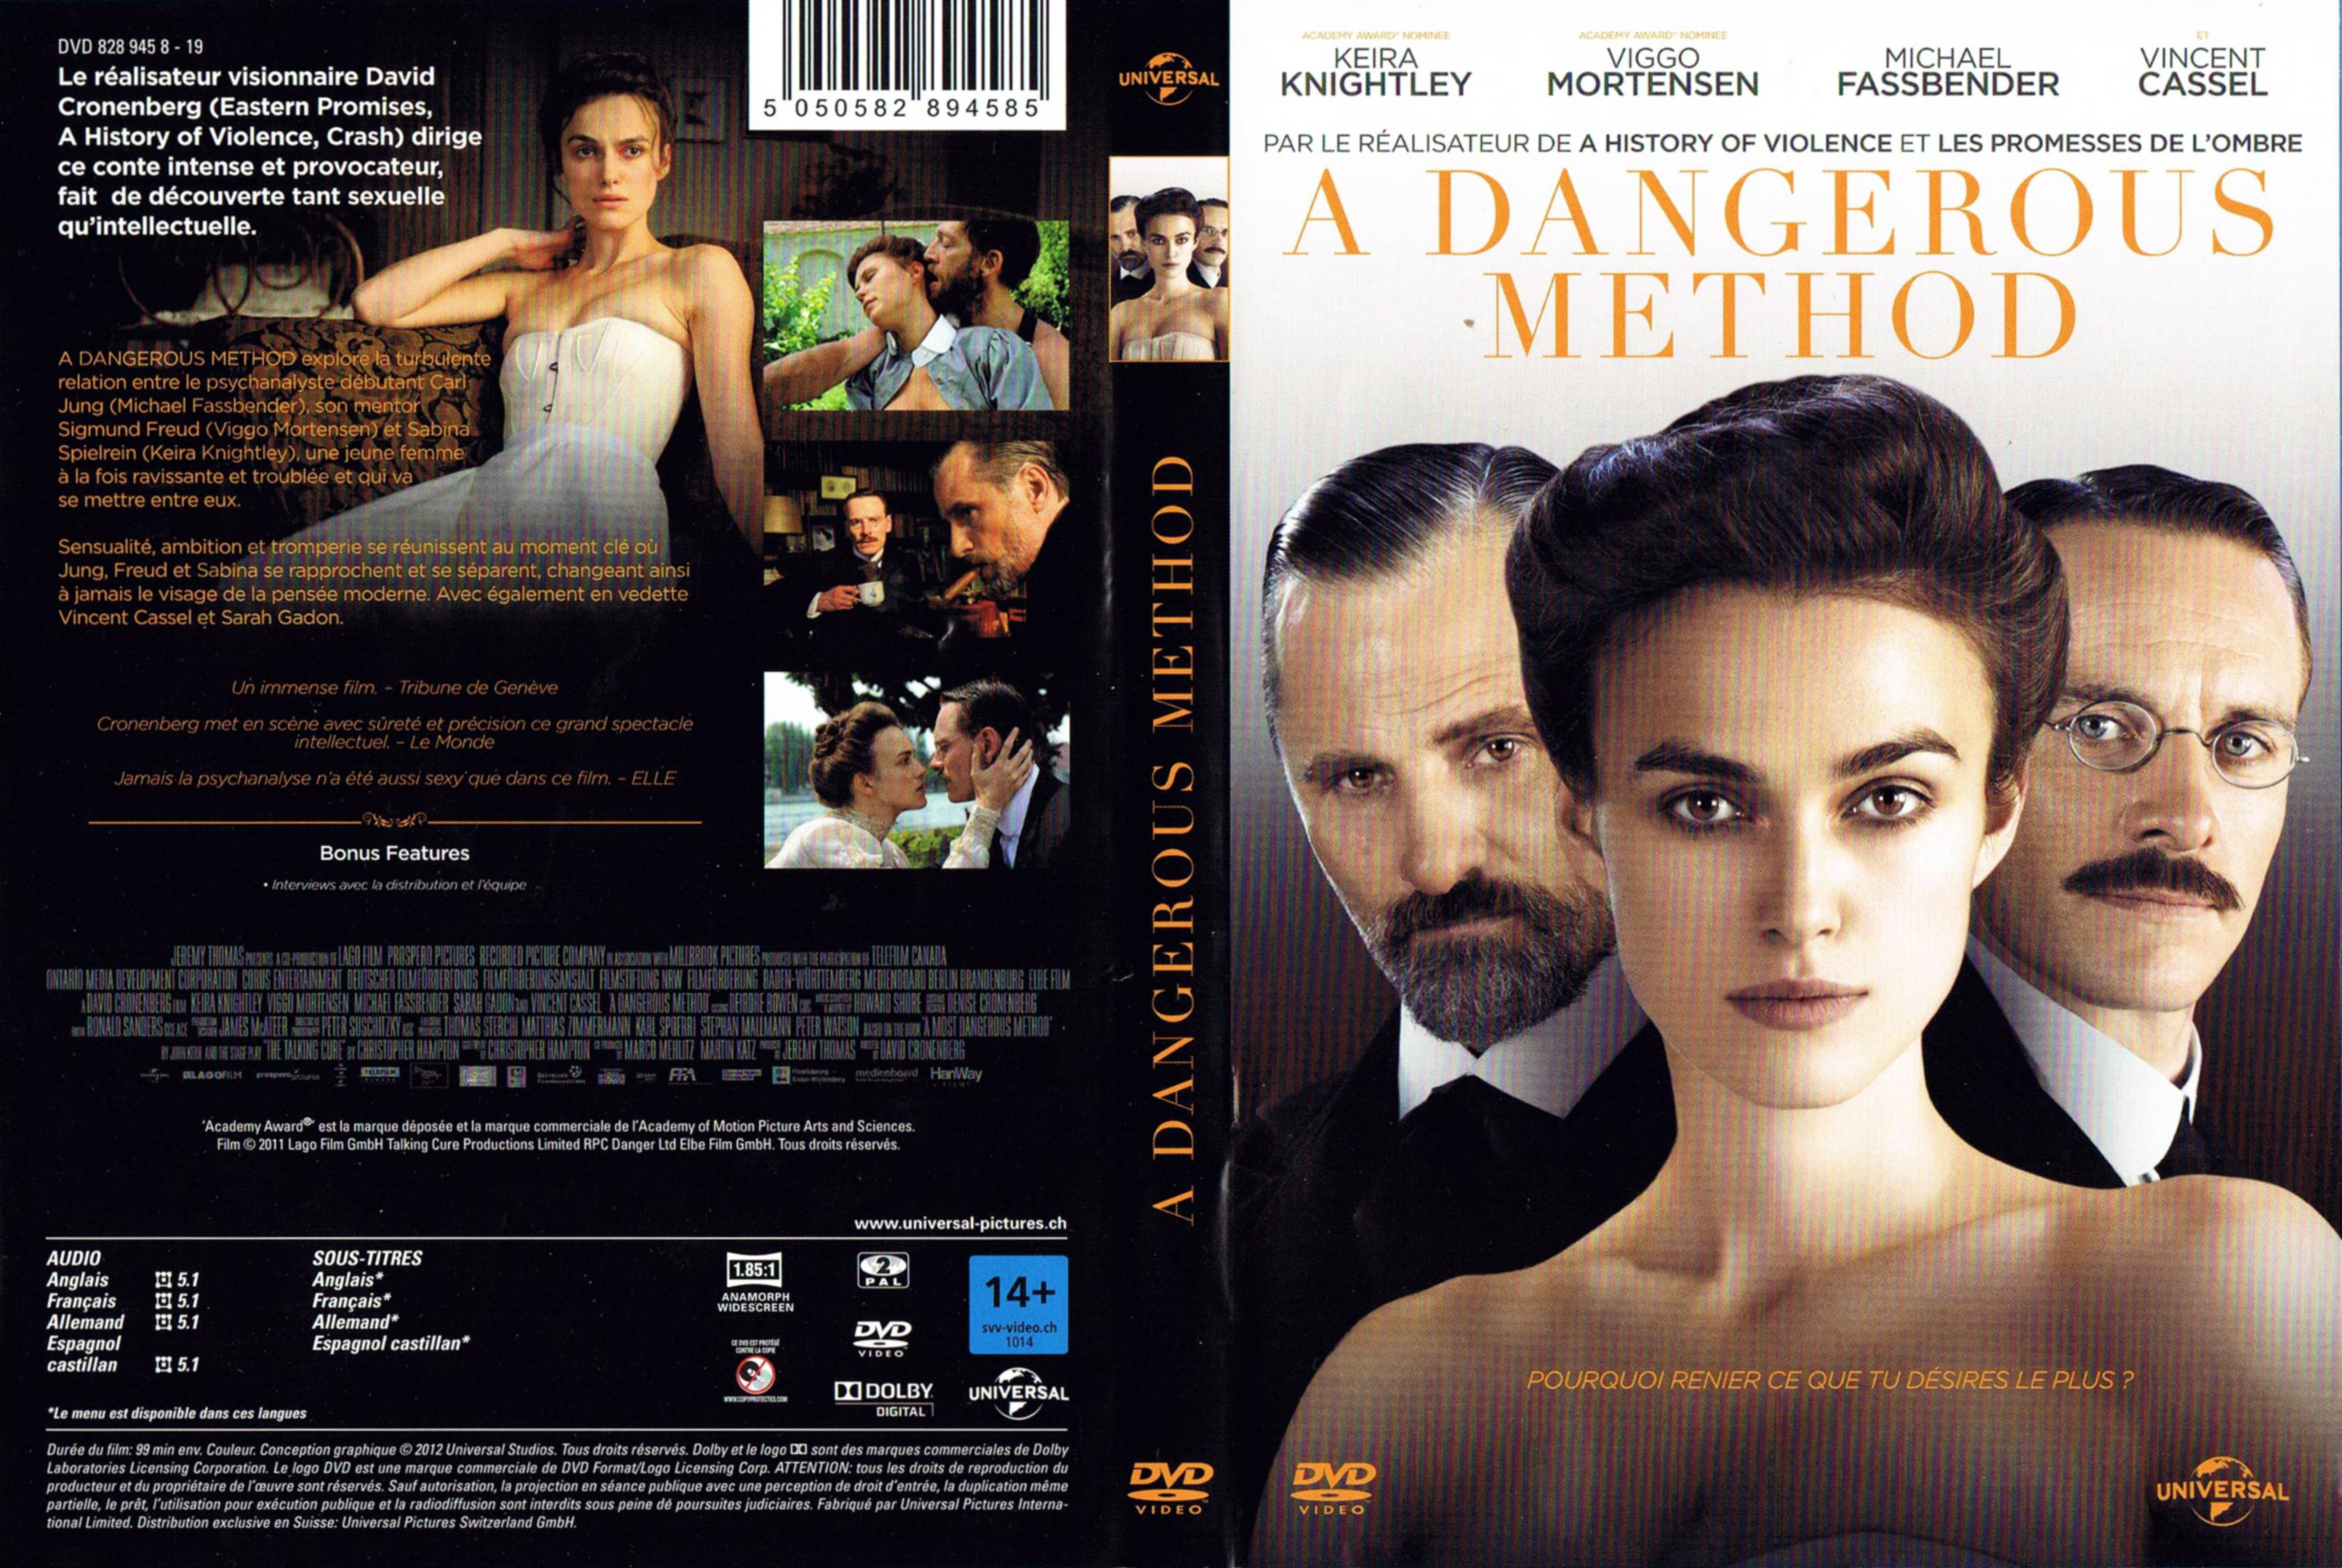 Jaquette DVD A dangerous method v2